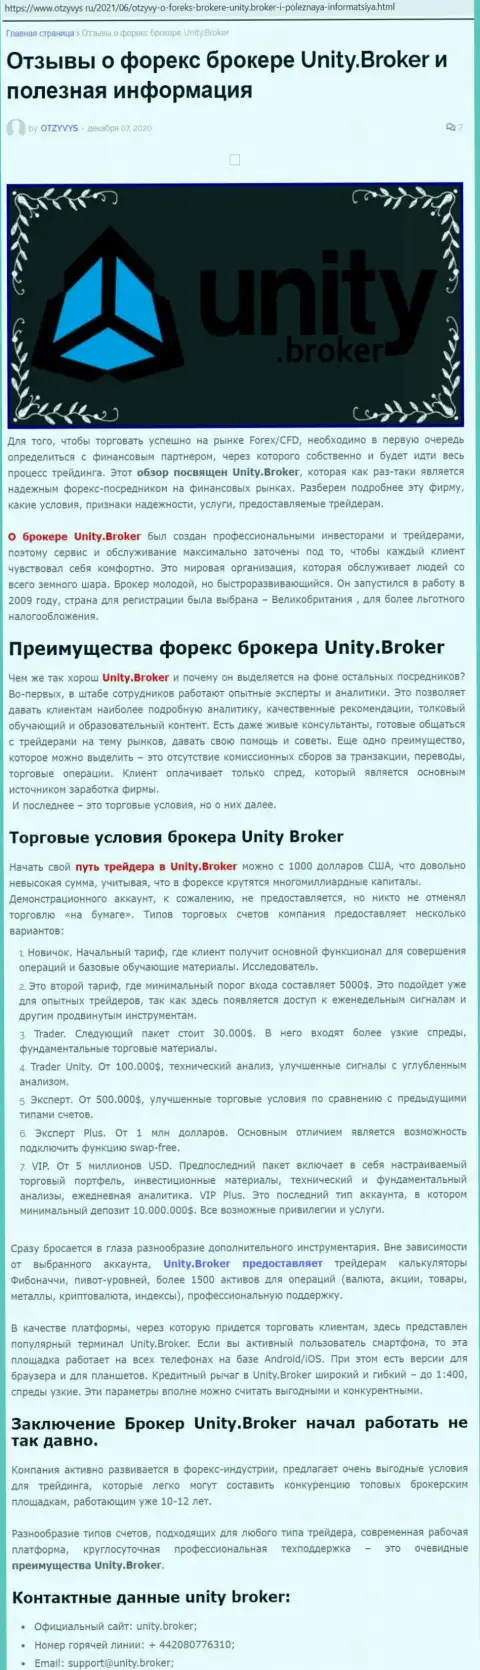 Статья о Forex-дилинговой организации Unity Broker на сайте Otzyvys Ru